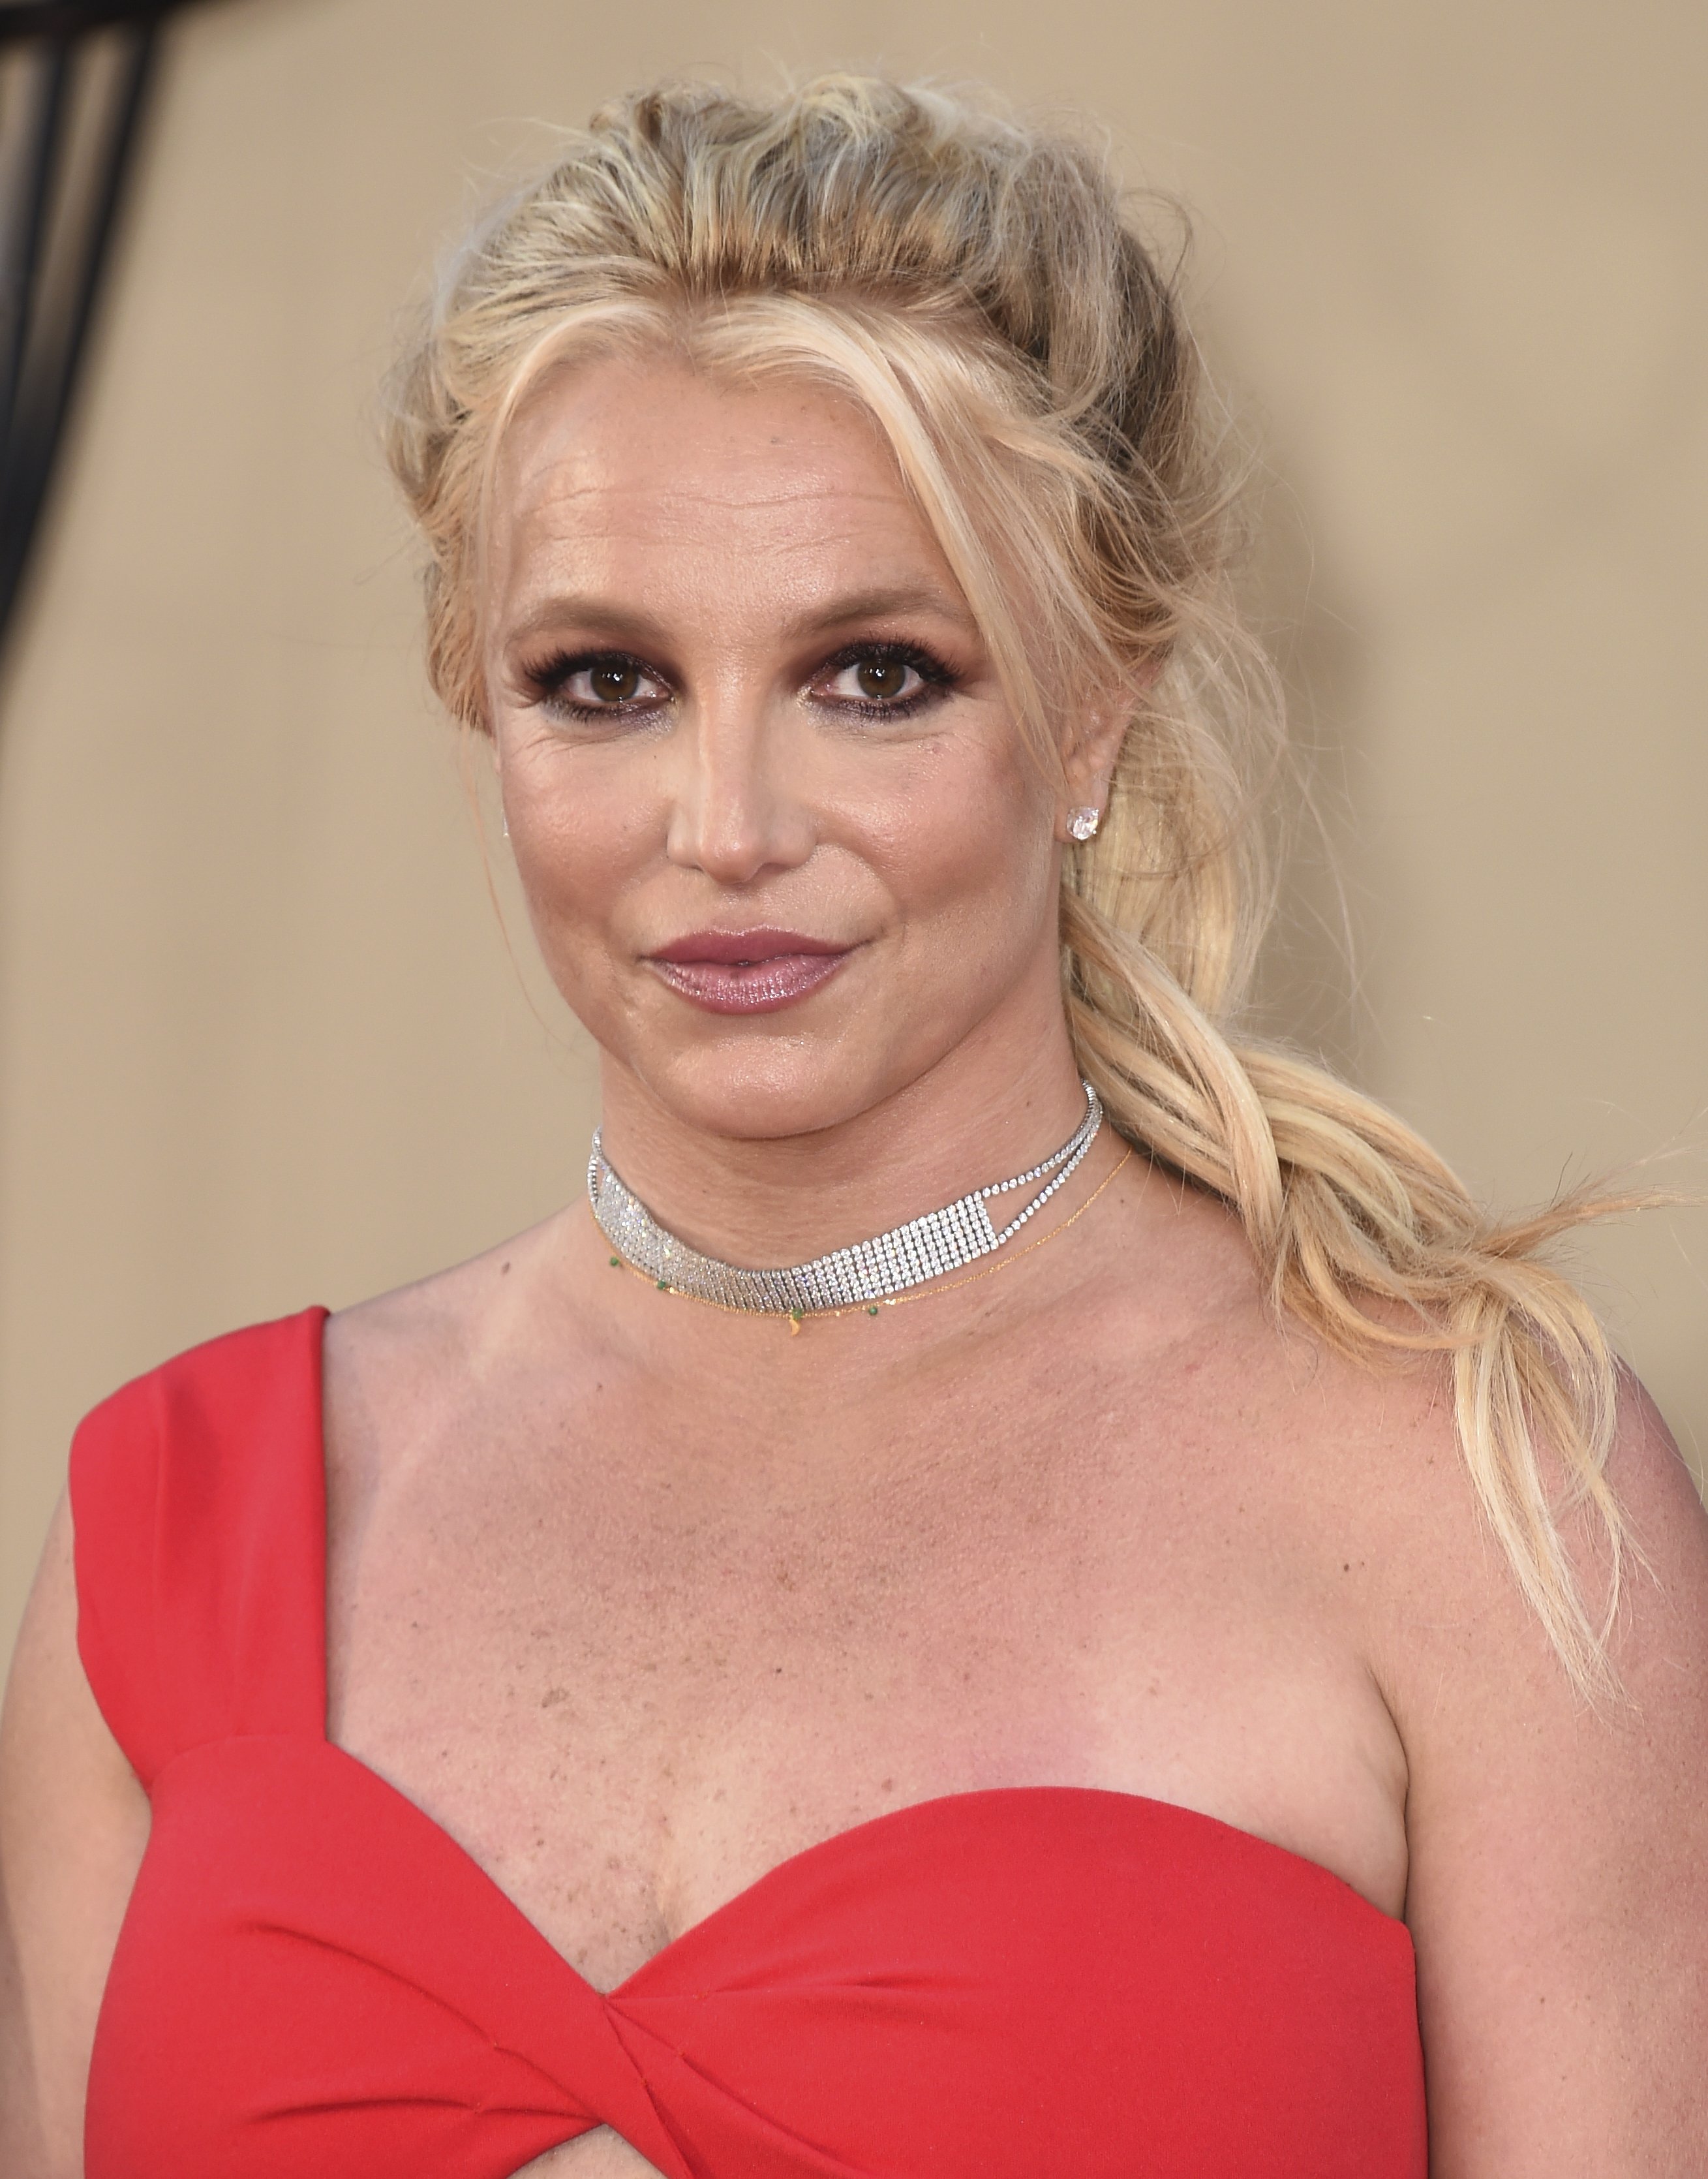 #FreeBritney denuncia el drama de Britney Spears, incapacitada legalment